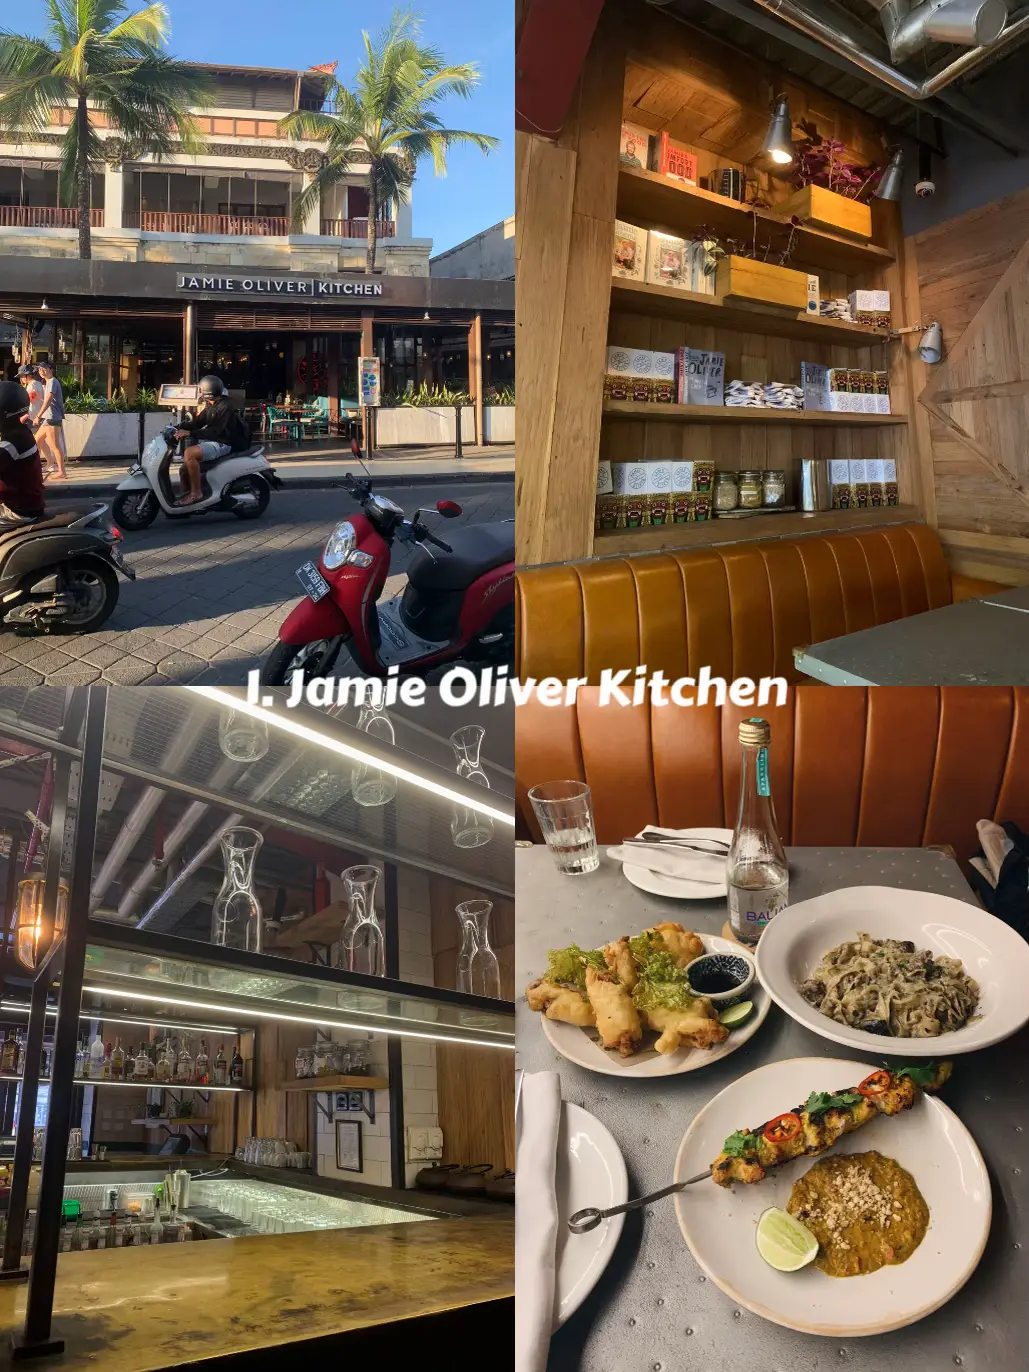 JAMIE OLIVER KITCHEN, Kuta - Menu, Prices & Restaurant Reviews